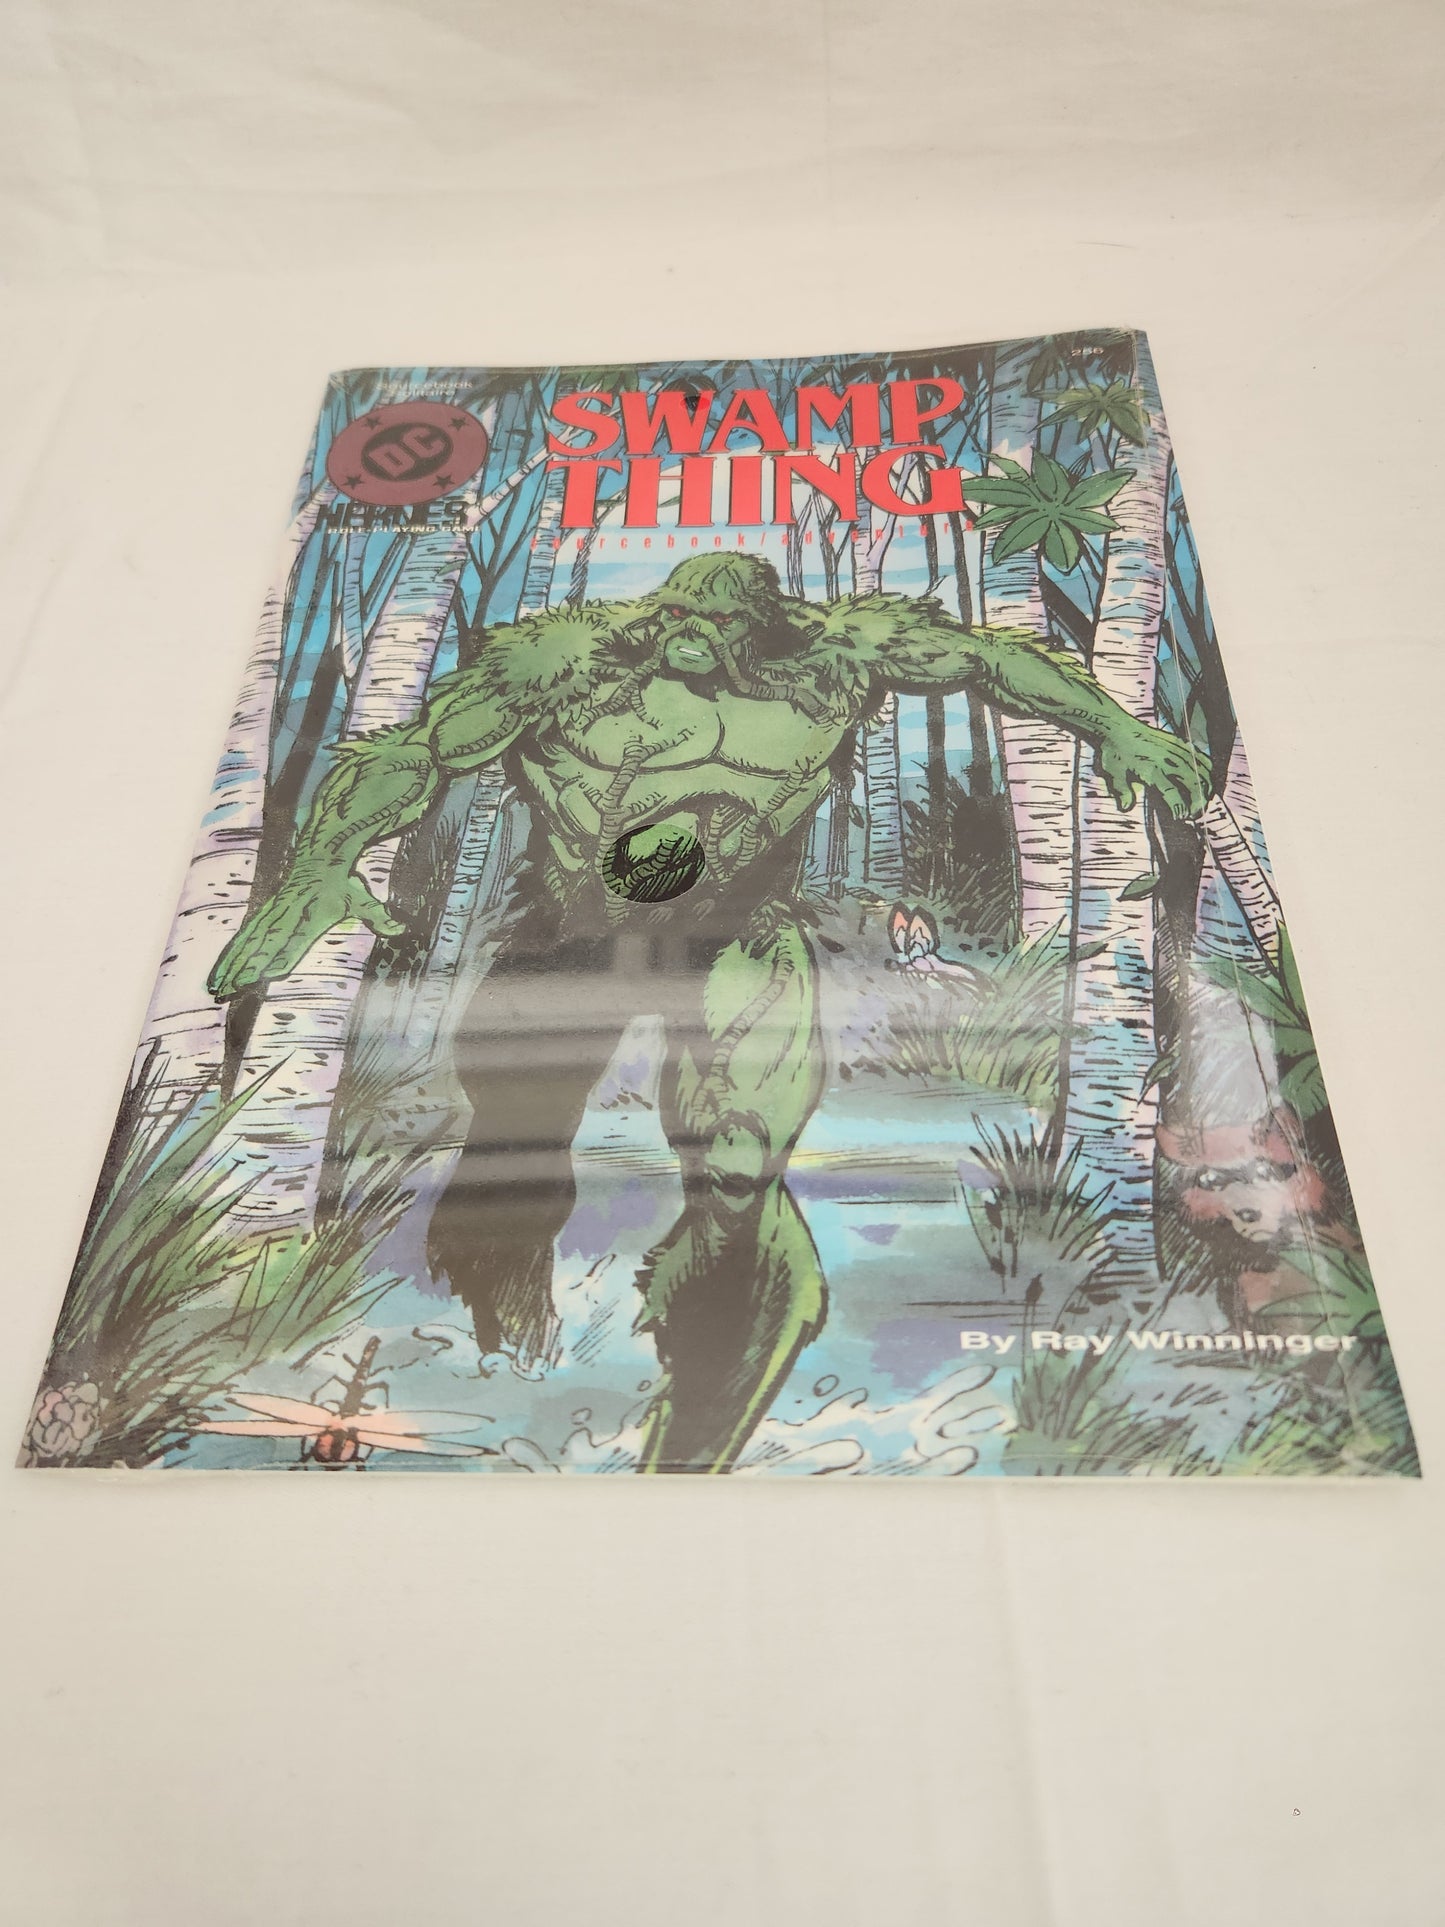 1991 DC Heroes: "Swamp Thing" RPG Sourcebook/Adventure from Mayfair Games